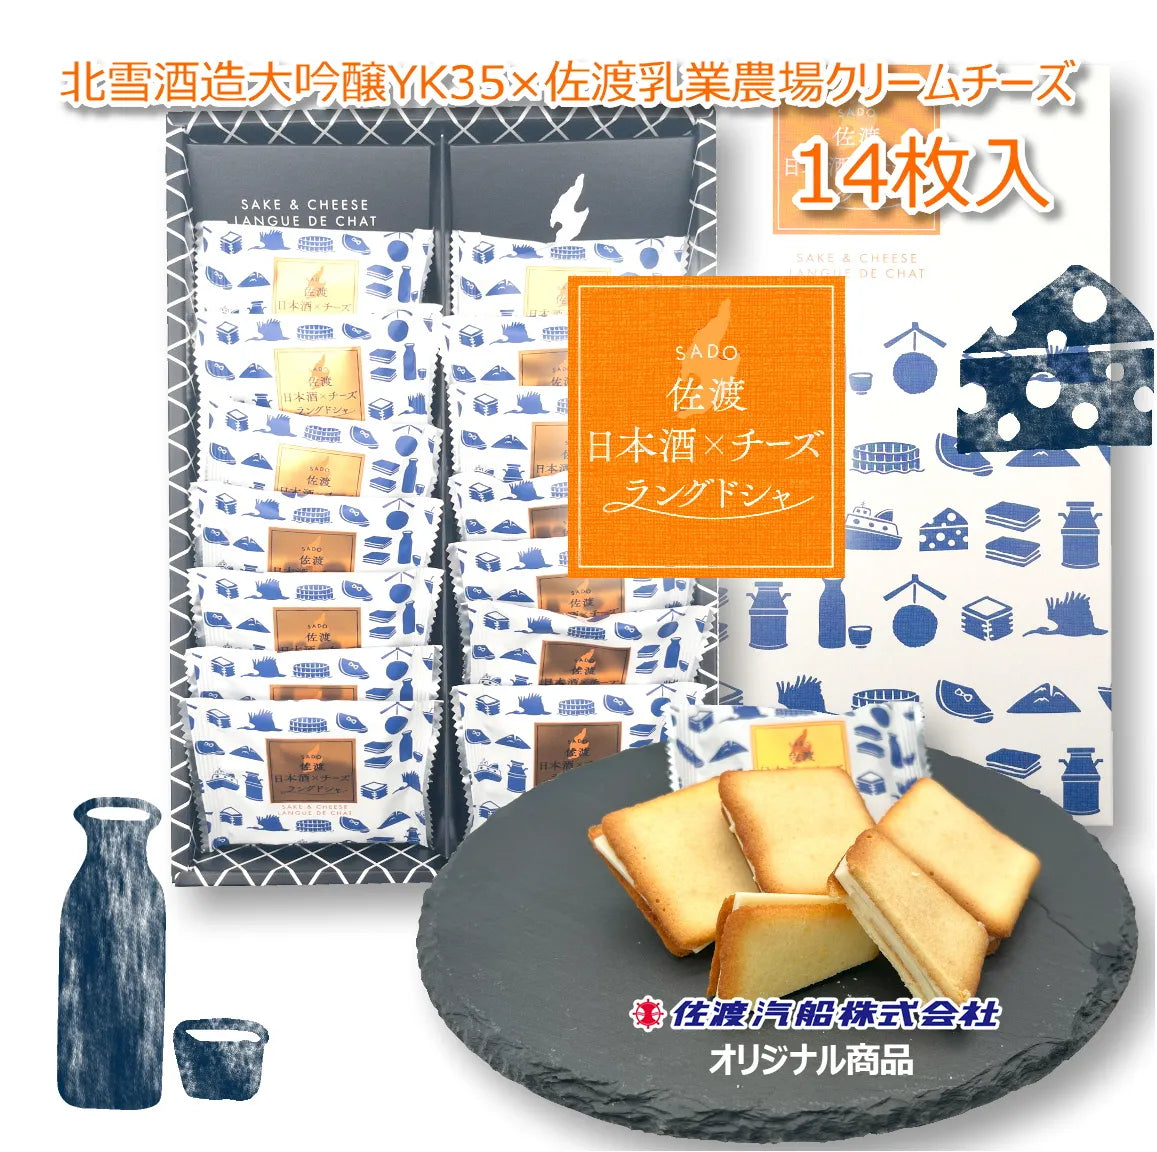 「佐渡日本酒×チーズラングドシャ(14枚入り)」 口の中で香り高く広がる大吟醸酒の贅沢スイーツ